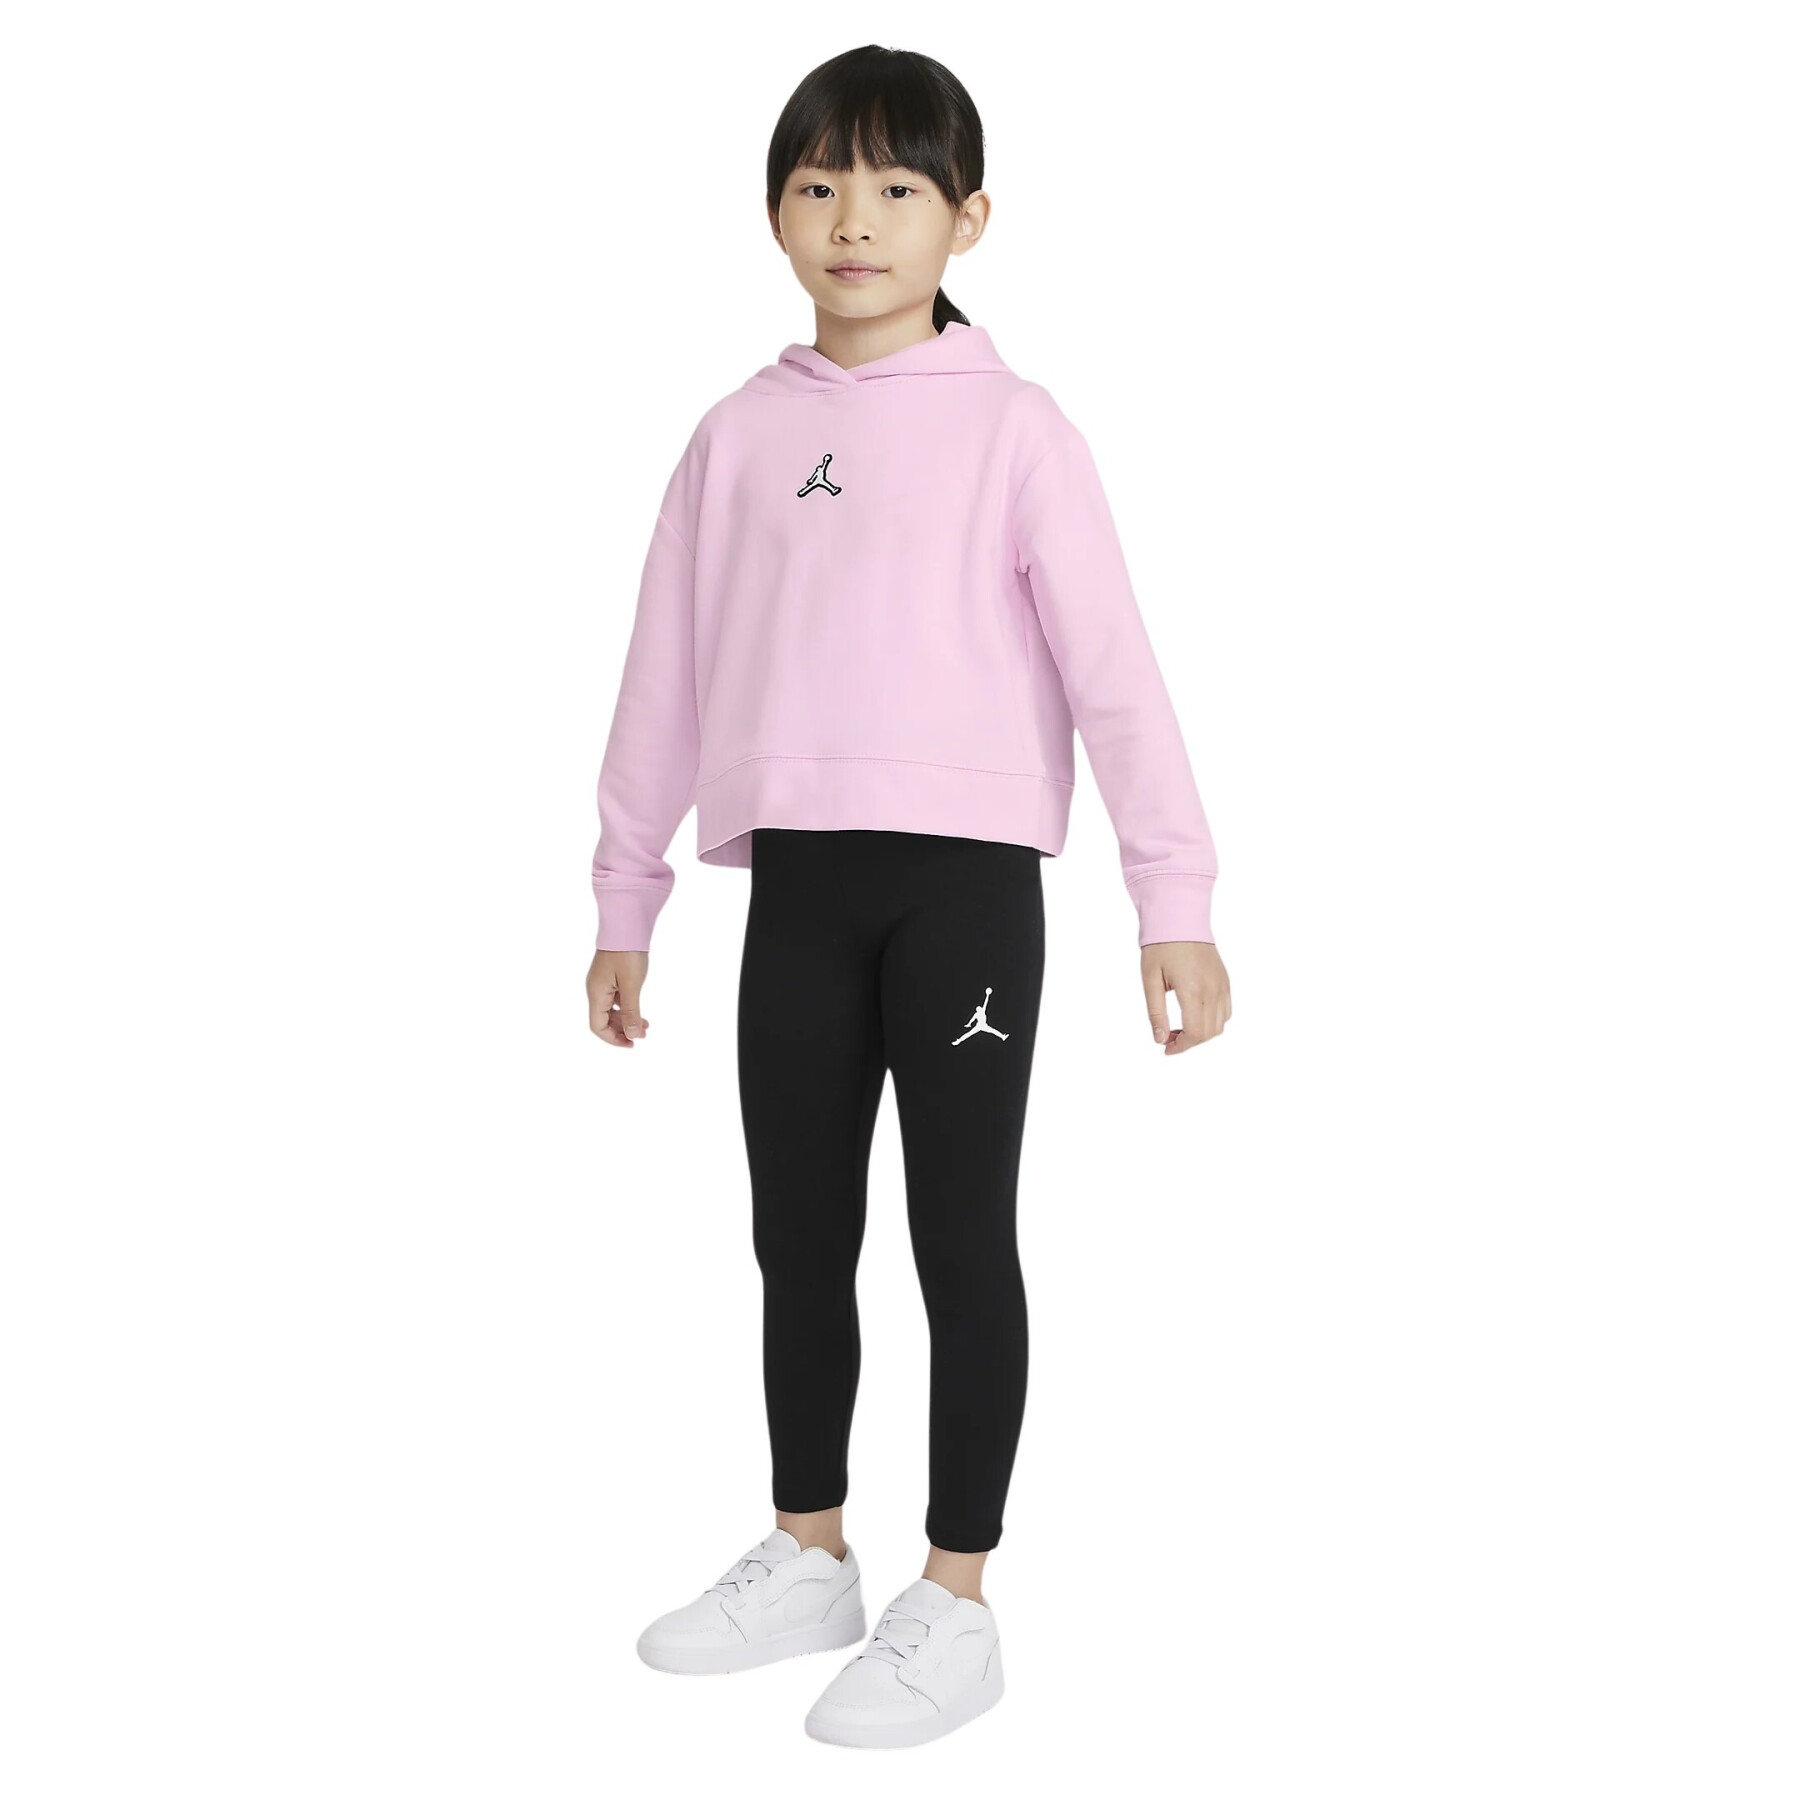 Girls' leggings Jordan Jumpman Core - Jordan - Brands - Lifestyle